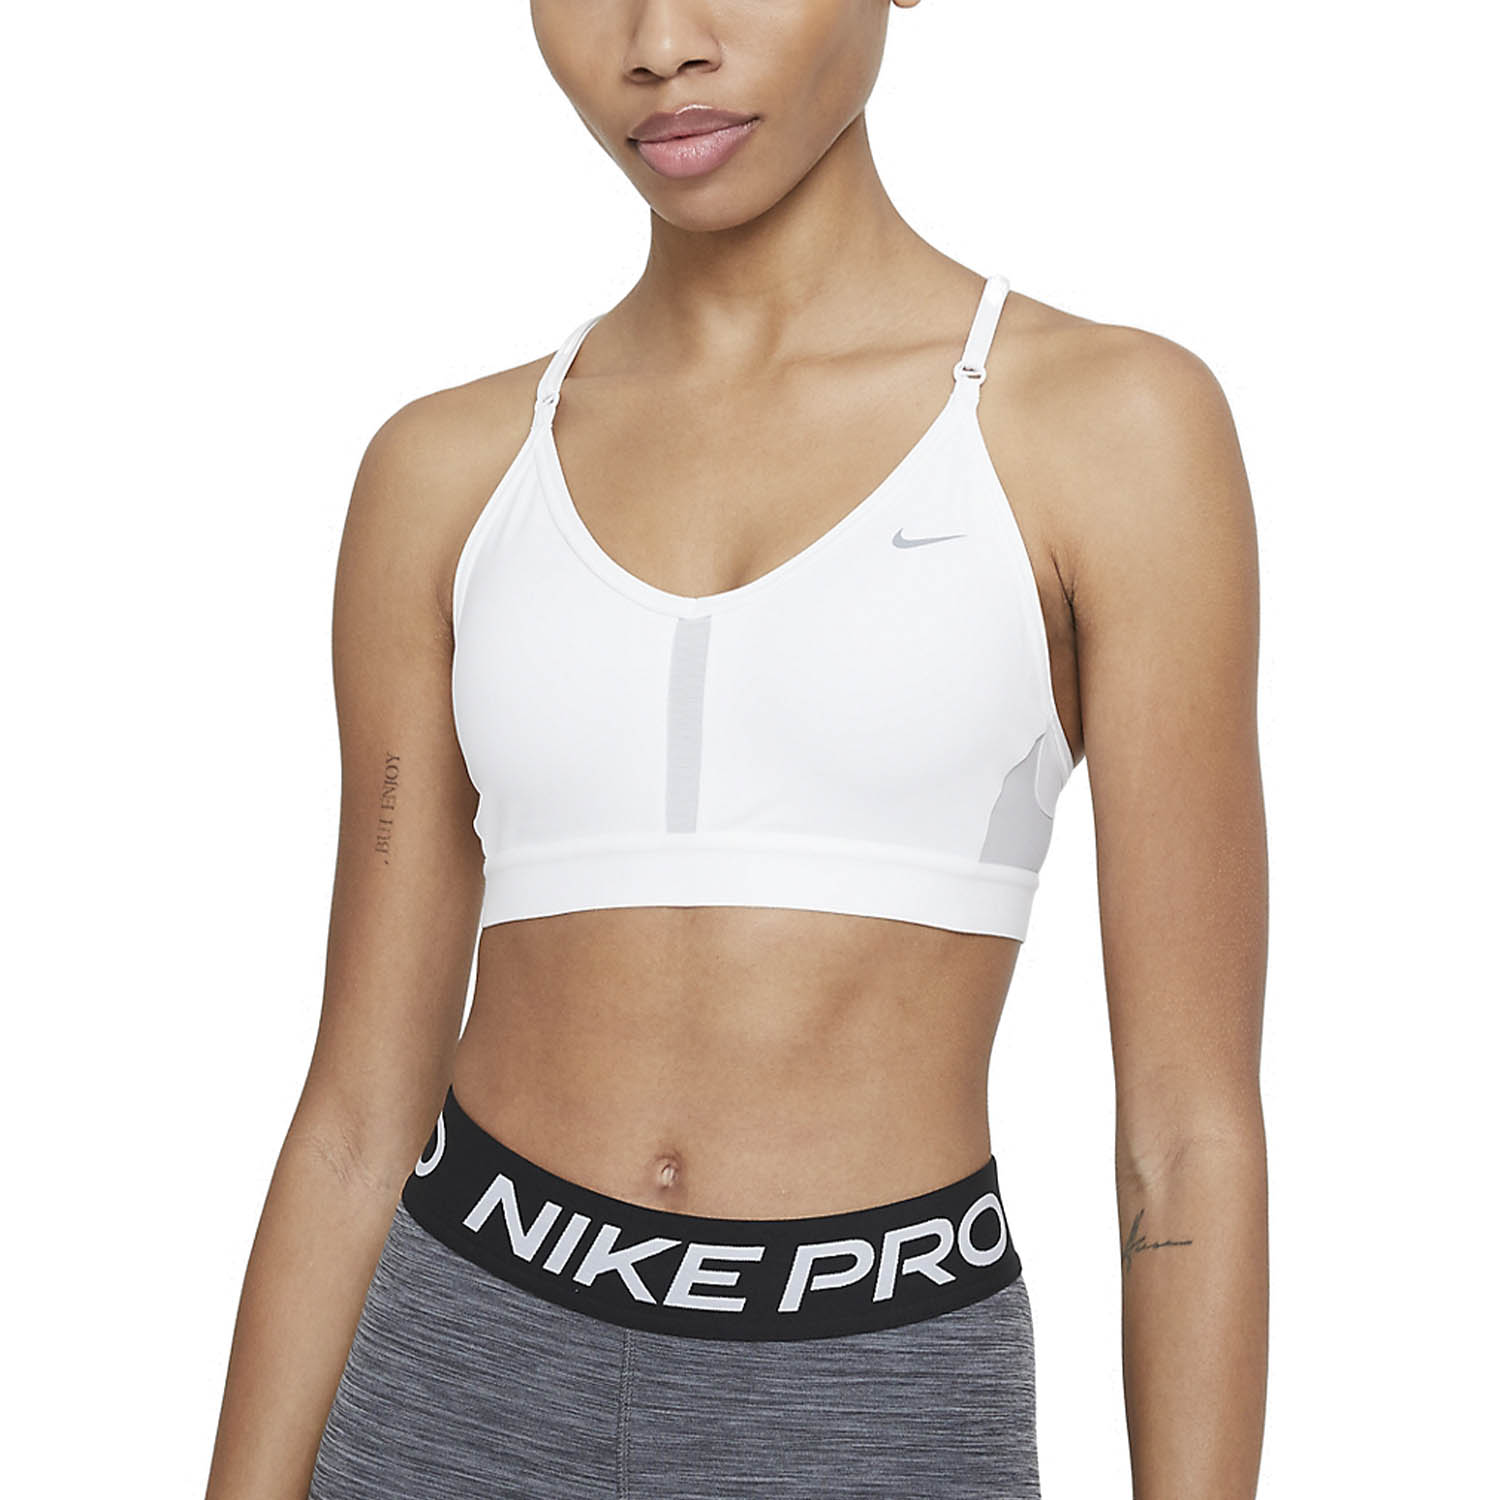 Nike Sujetador Deportivo Mujer - White/Grey